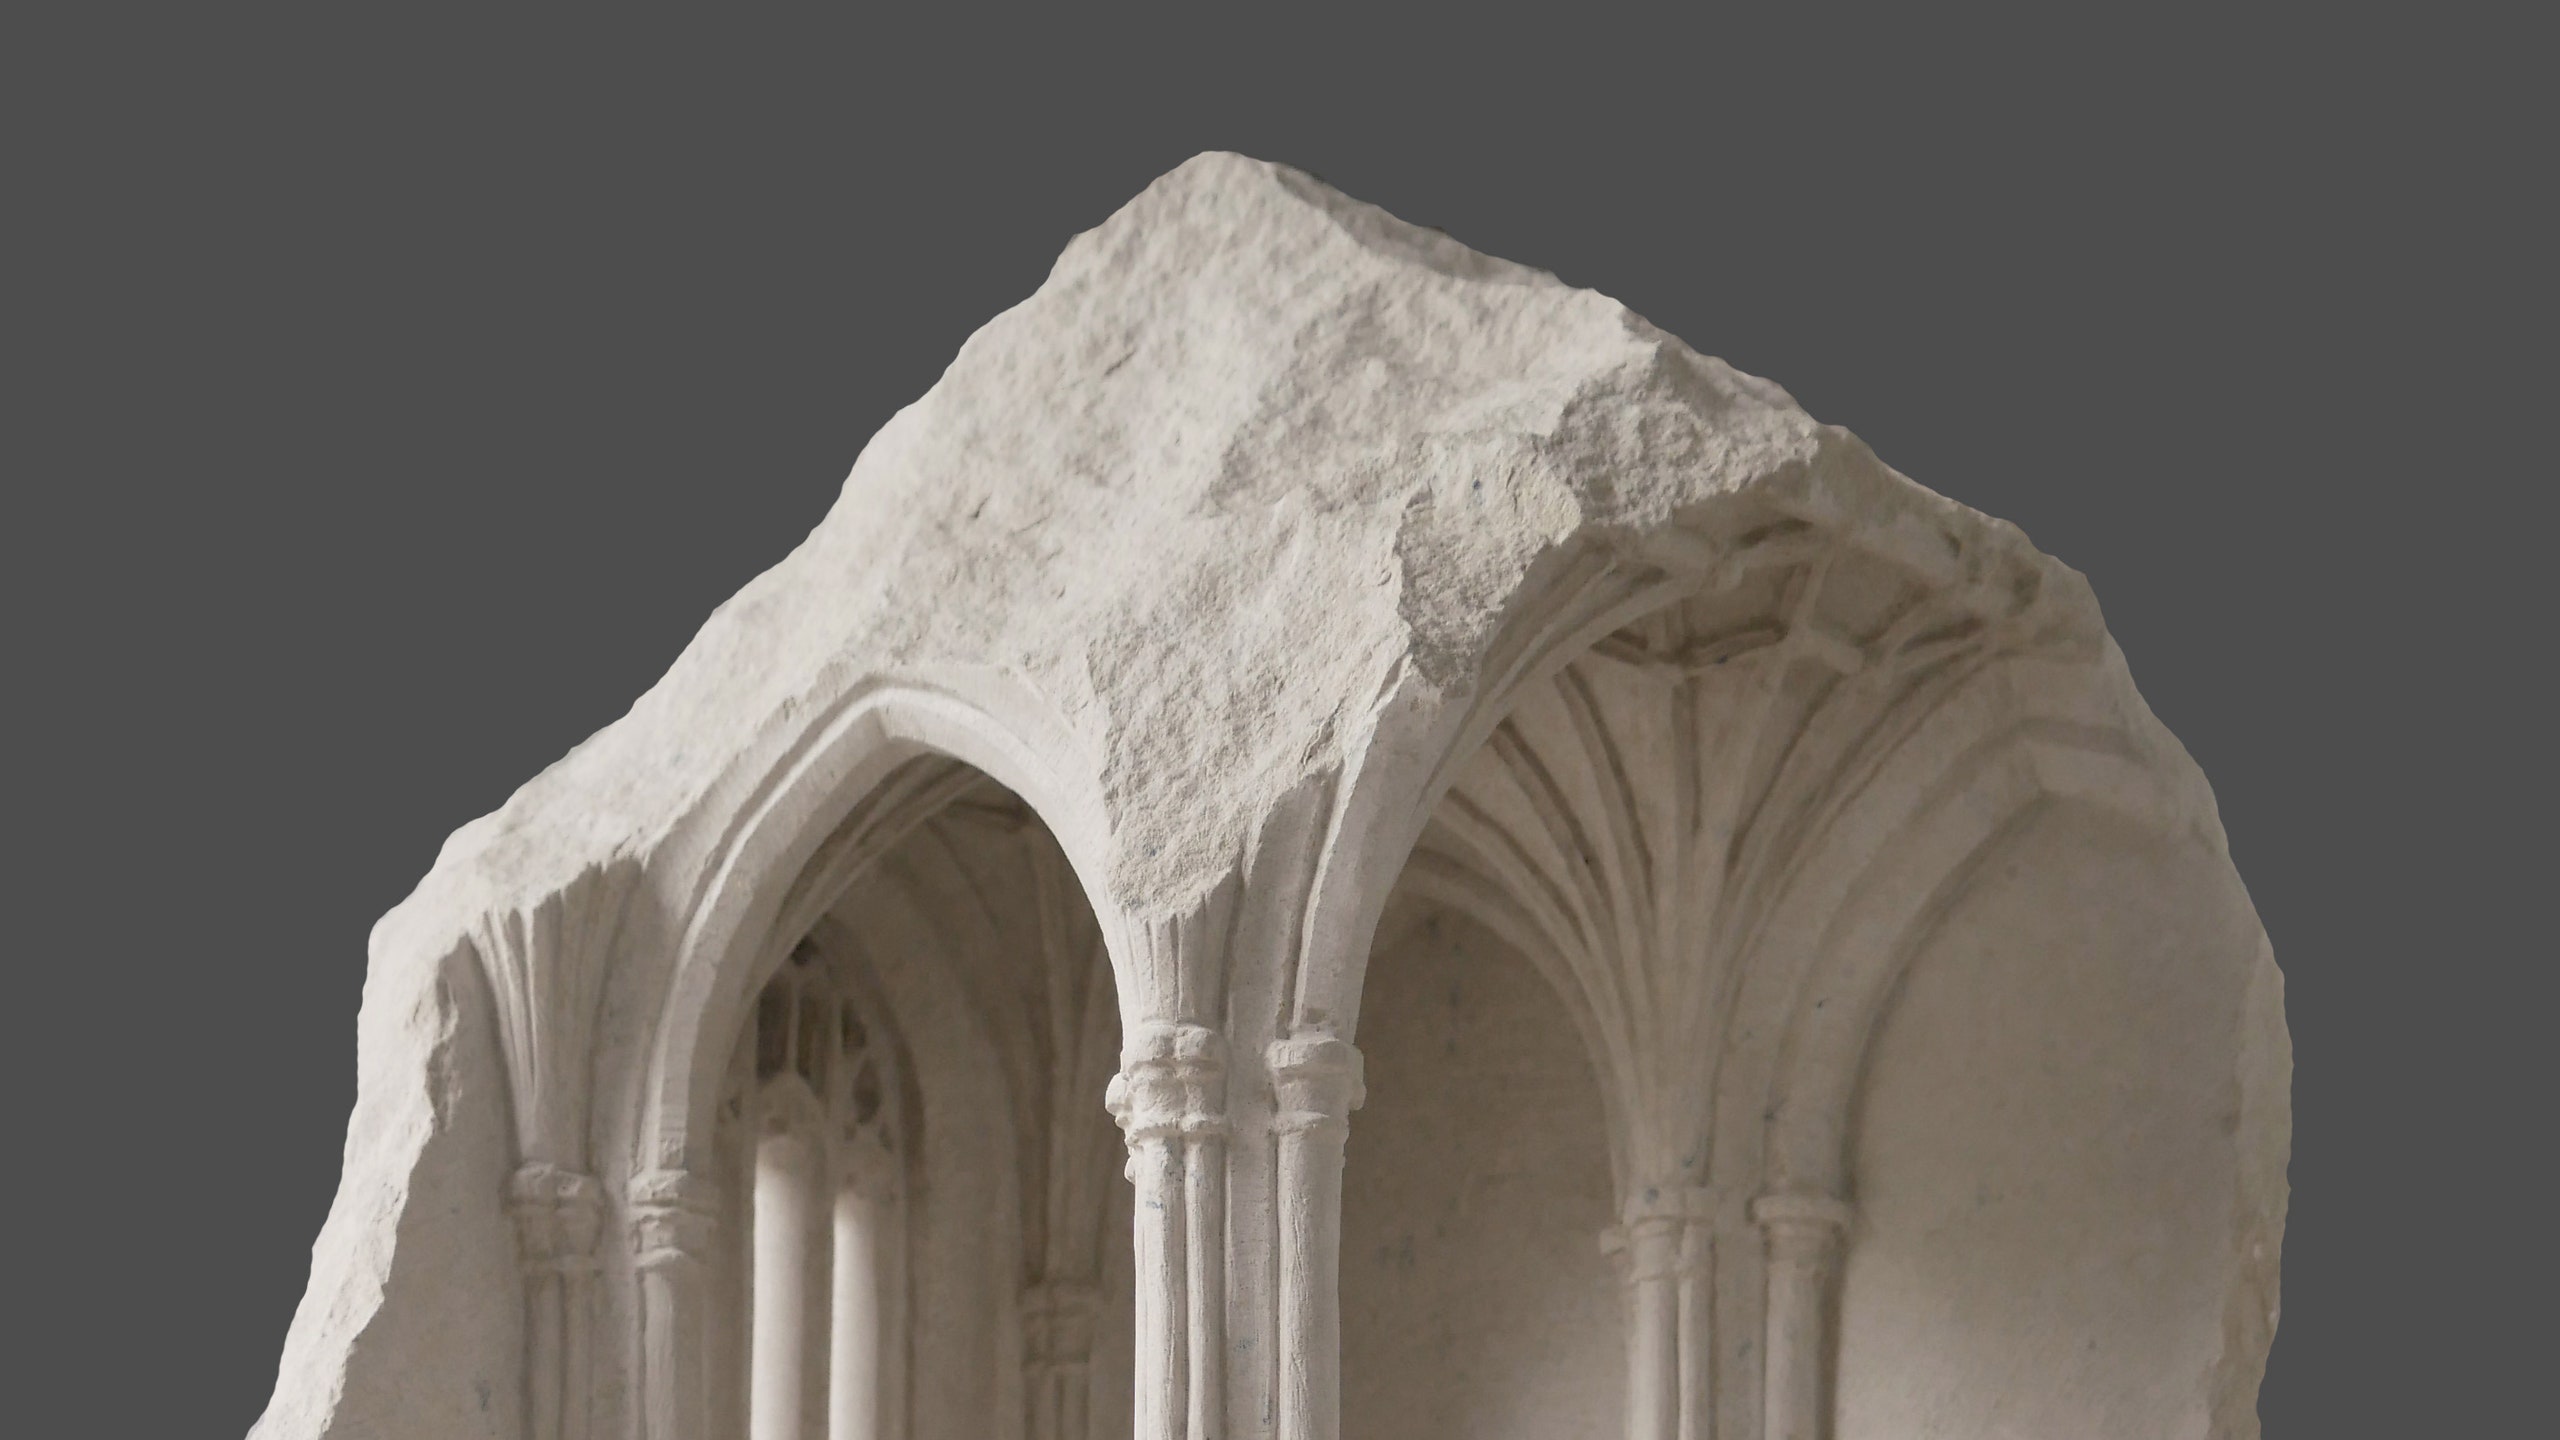 Резной мрамор  архитектурные скульптуры от Мэтью Симмондса